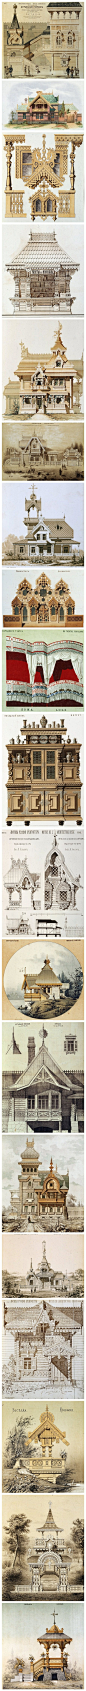 18世纪俄罗斯建筑设计图.jpg